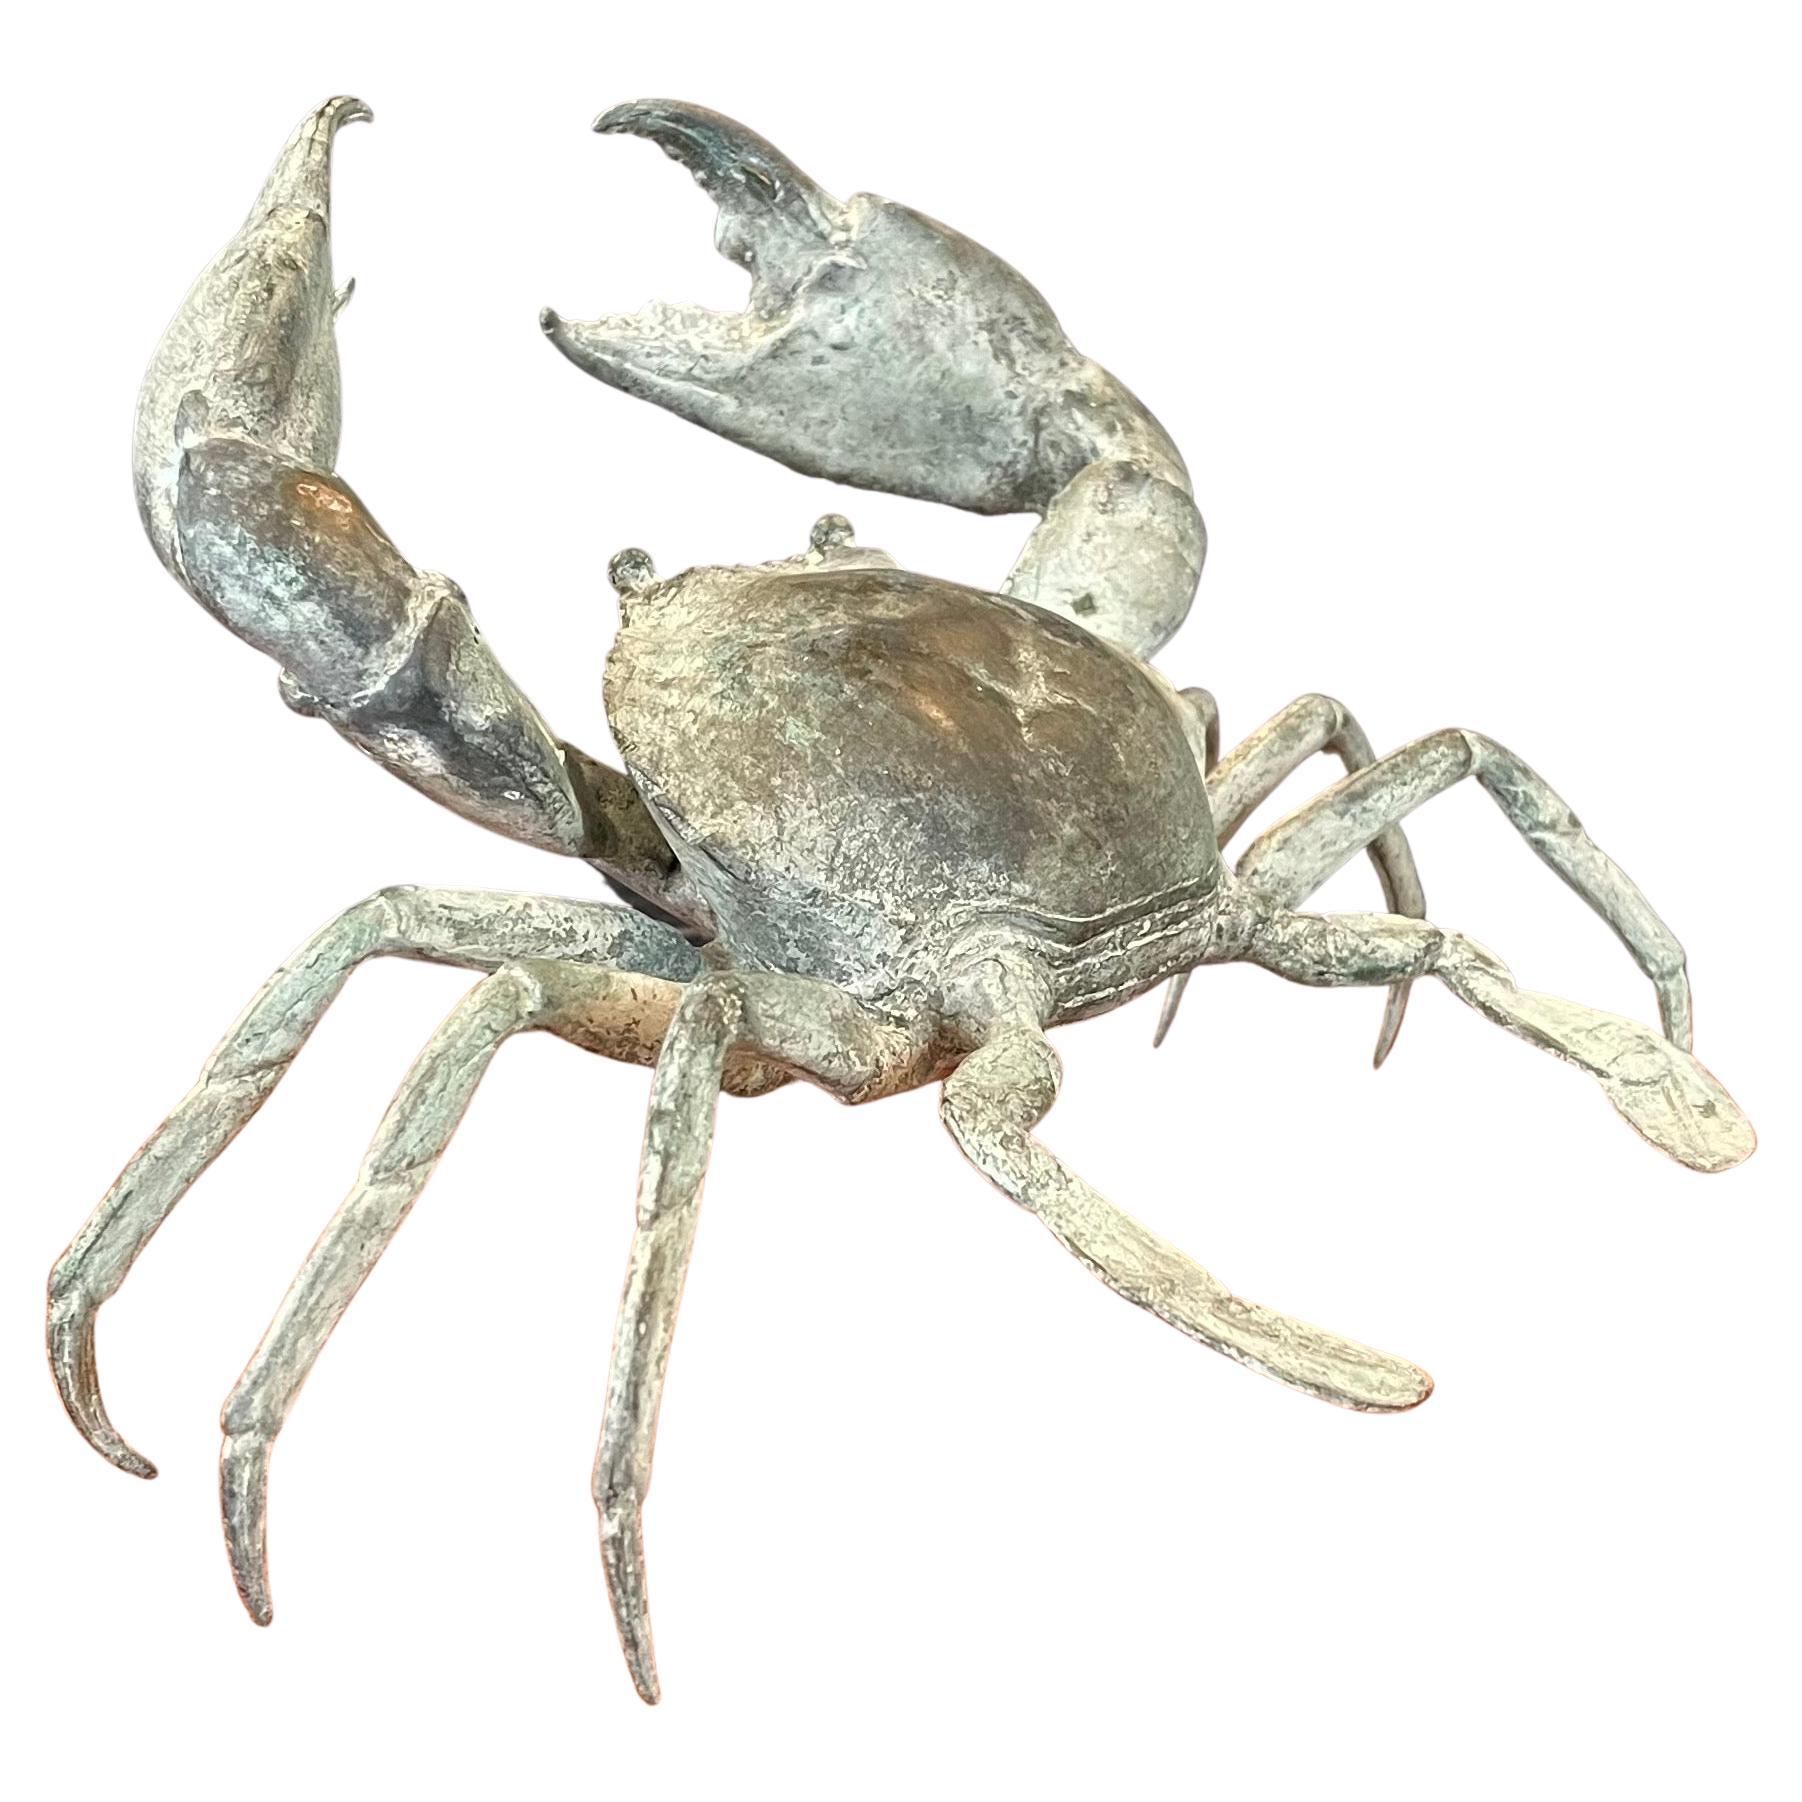 Une sculpture de crabe articulée en bronze vintage, bien détaillée et patinée, vers les années 1970. La pièce est en très bon état et assez grande : elle mesure 12 